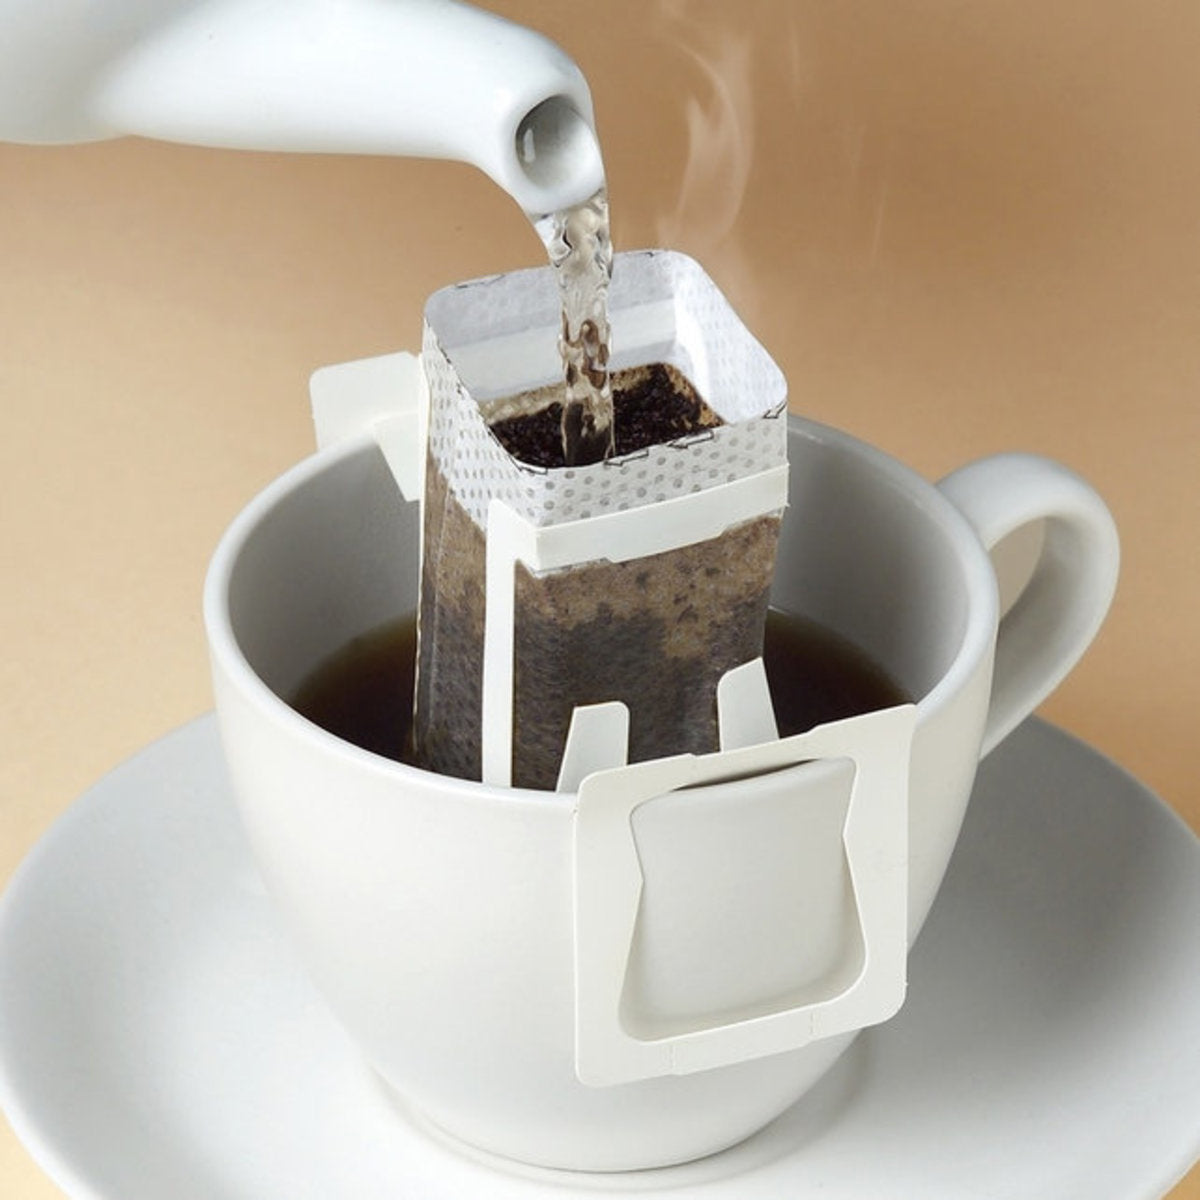 (50个) 便携式咖啡过滤纸袋挂耳式滴咖啡袋一次性滴滤咖啡袋旅行野营家庭办公室的完美选择便携式咖啡机